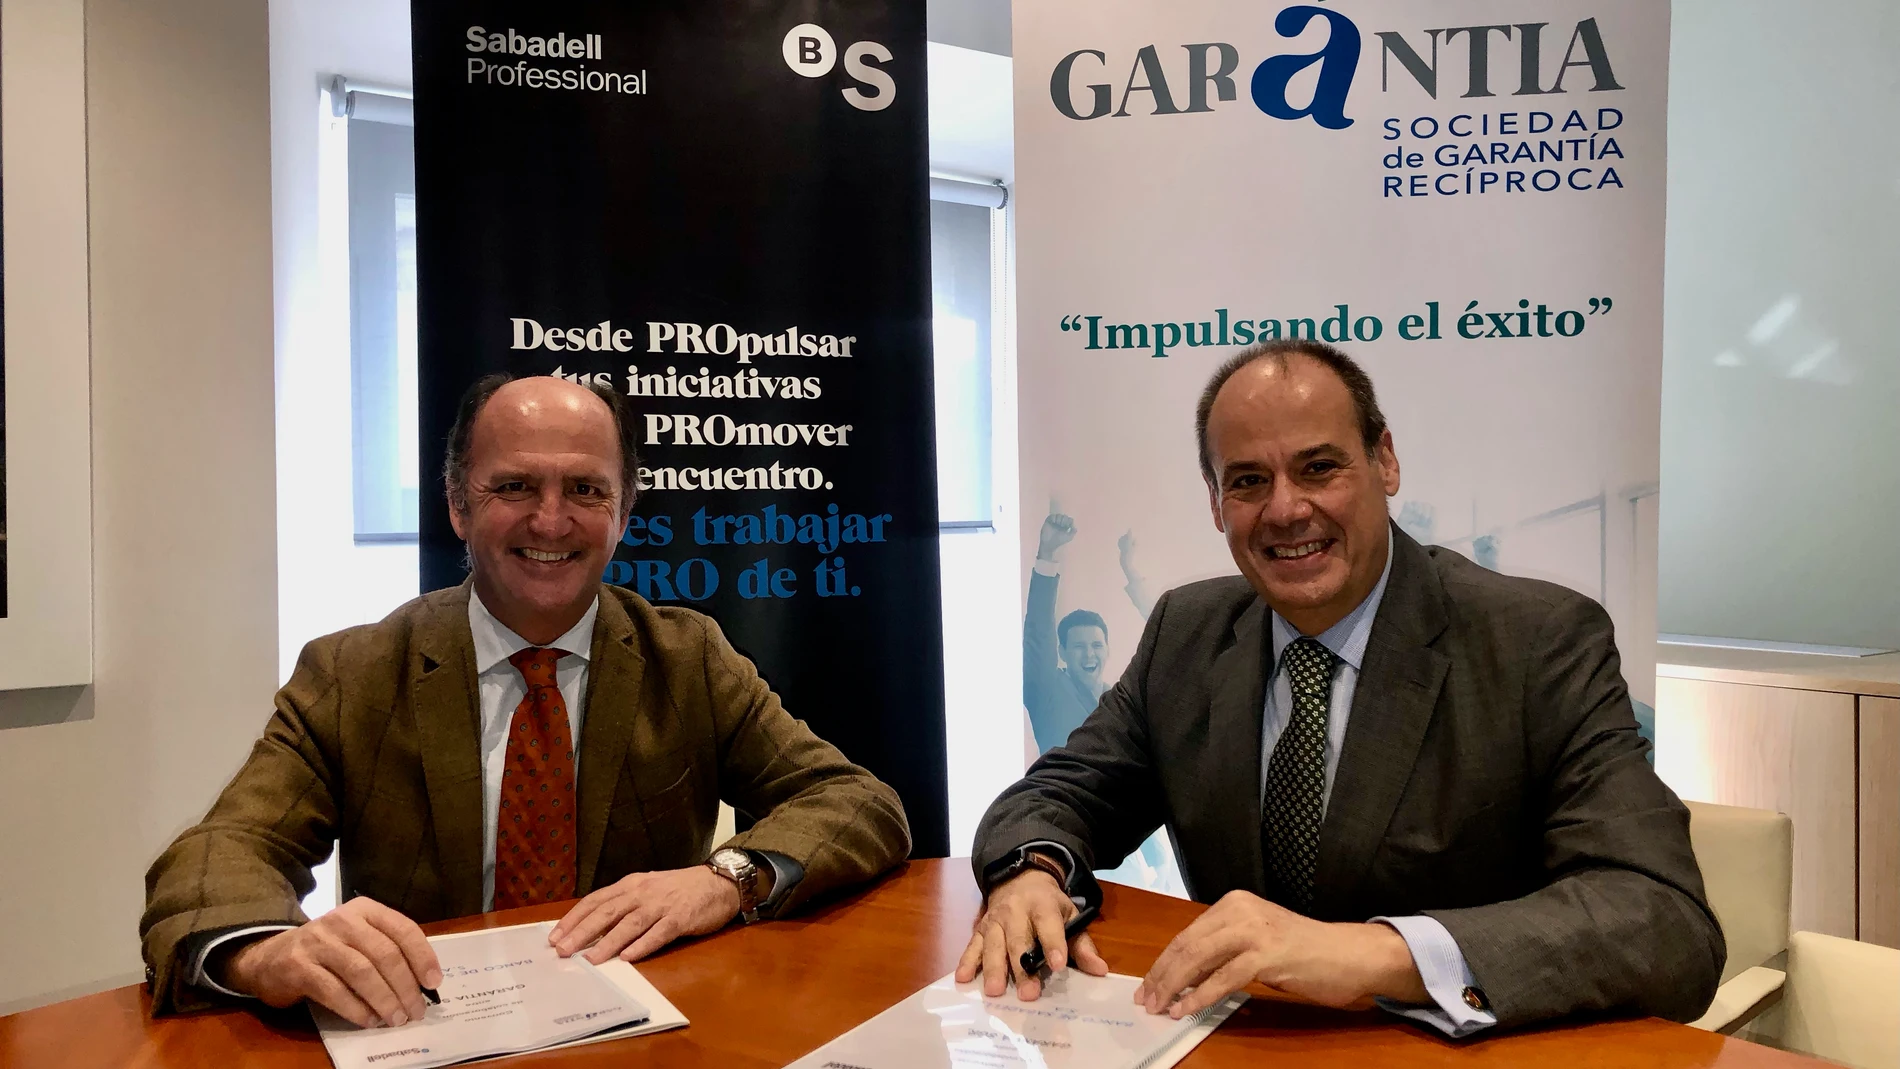 El director regional de Andalucía Occidental y Extremadura del Banco Sabadell, Rodrigo Molina, y el director general de Garántia, José María Vera